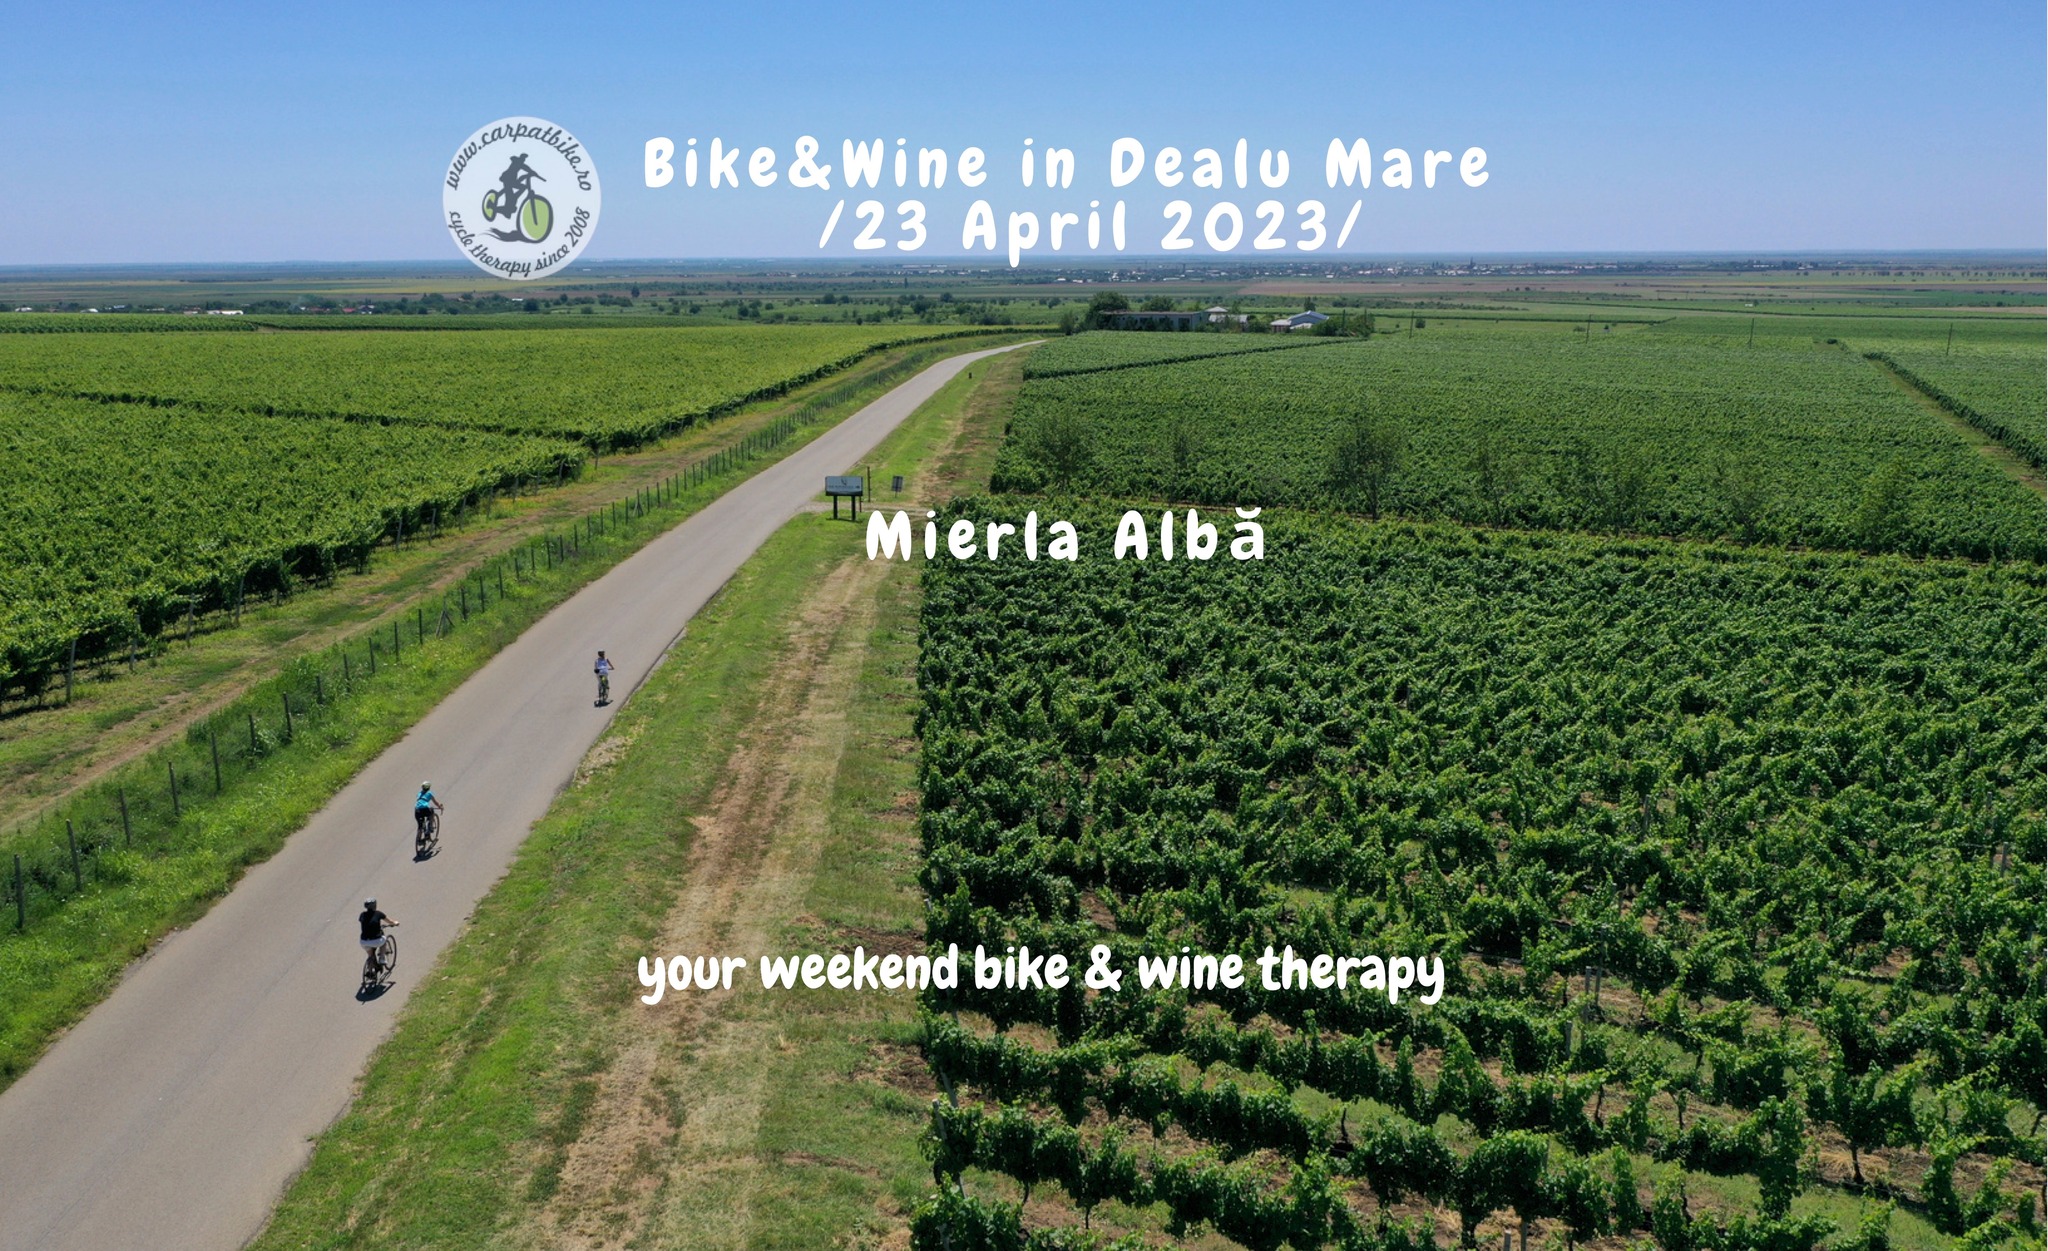 Bike&Wine - Crama Mierla Alba (Dealu Mare)